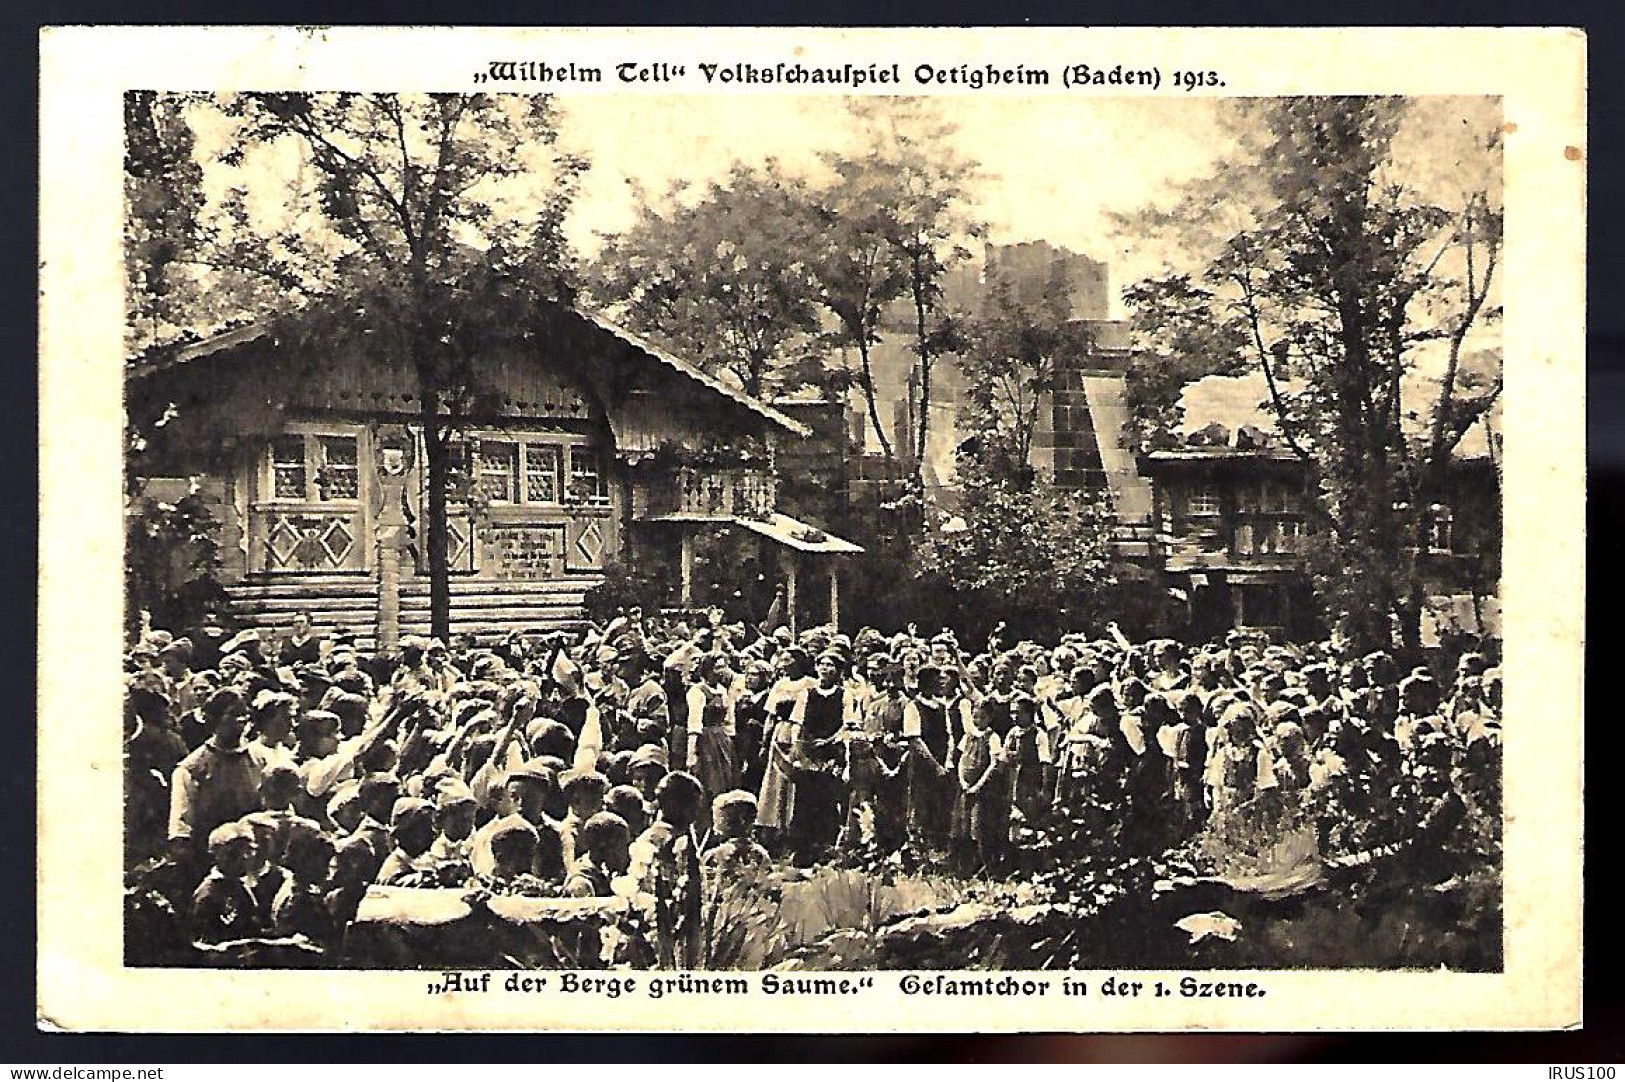 OETIGHEIM / RASTATT - 1913 ( Baden ), Wilhelm Tell Volkschauspiel - GESAMTCHOR  - Rastatt